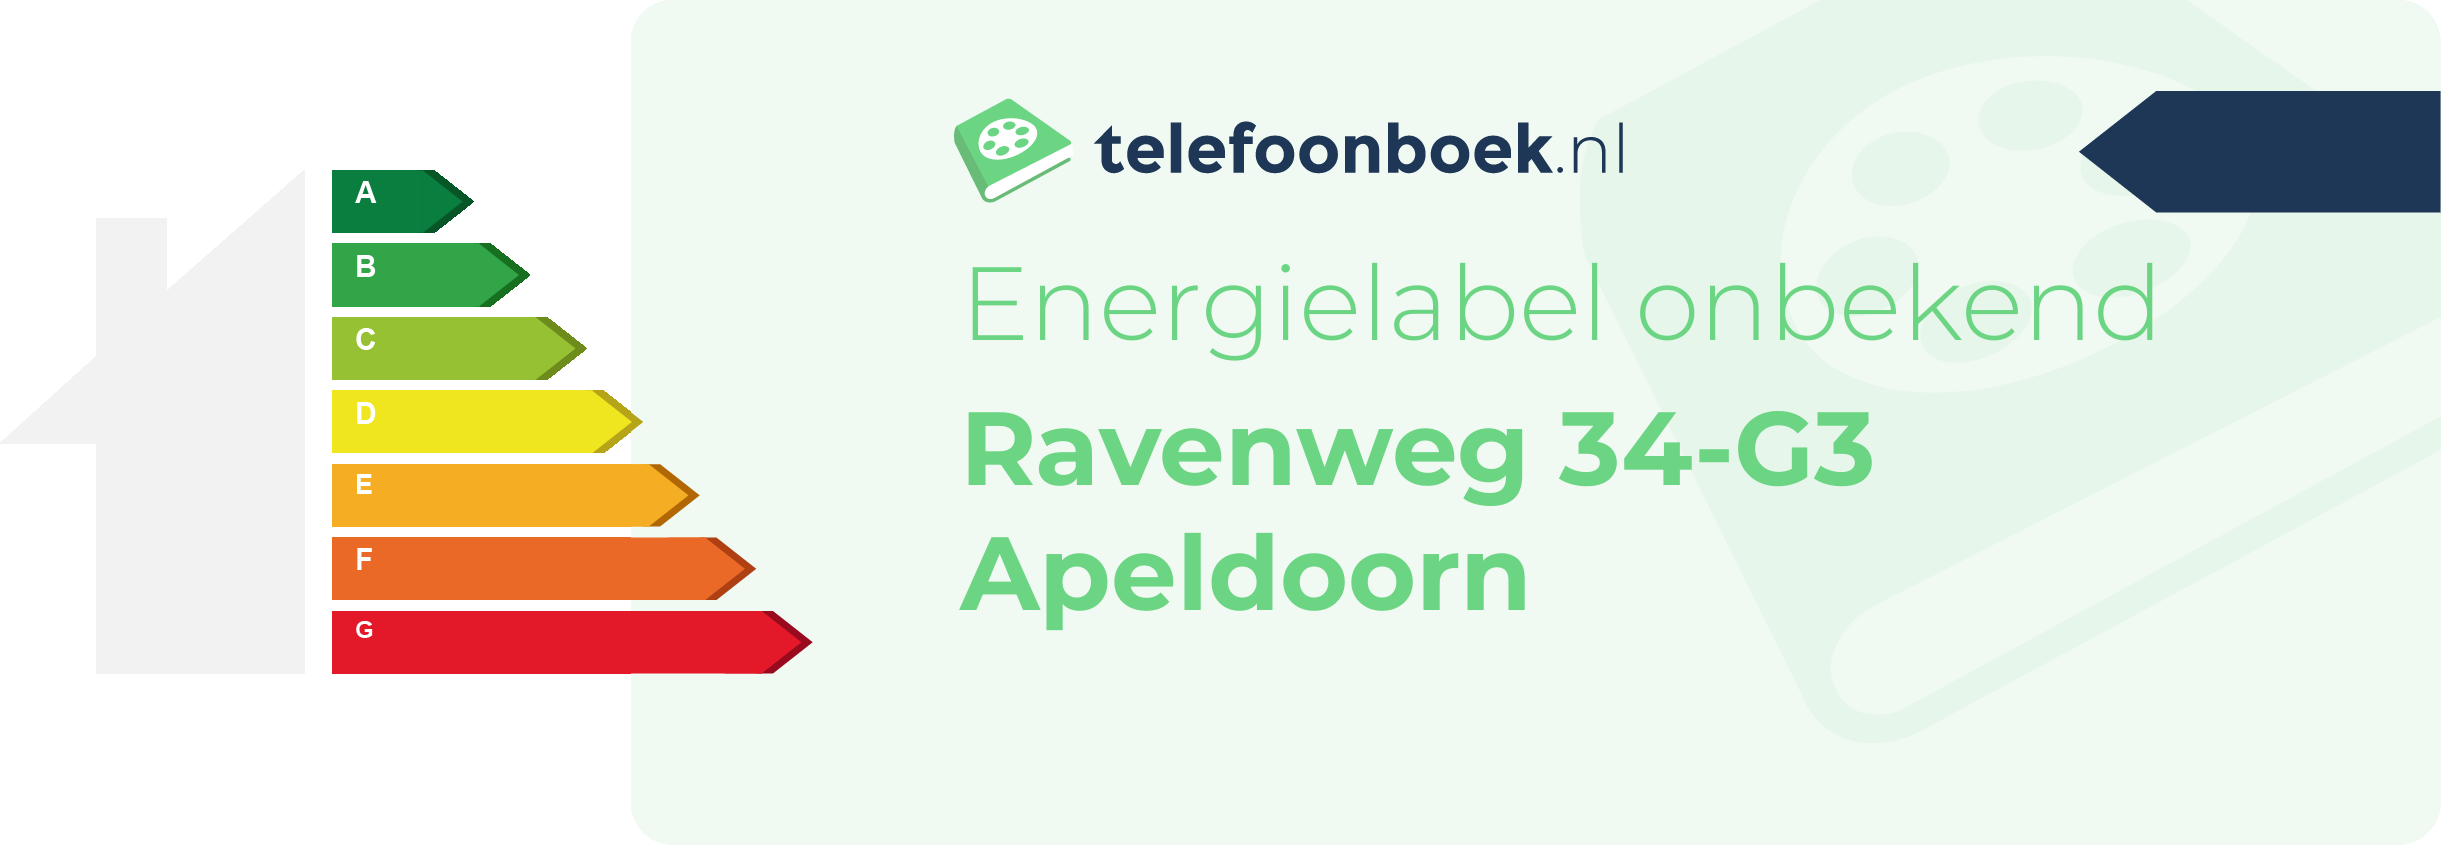 Energielabel Ravenweg 34-G3 Apeldoorn